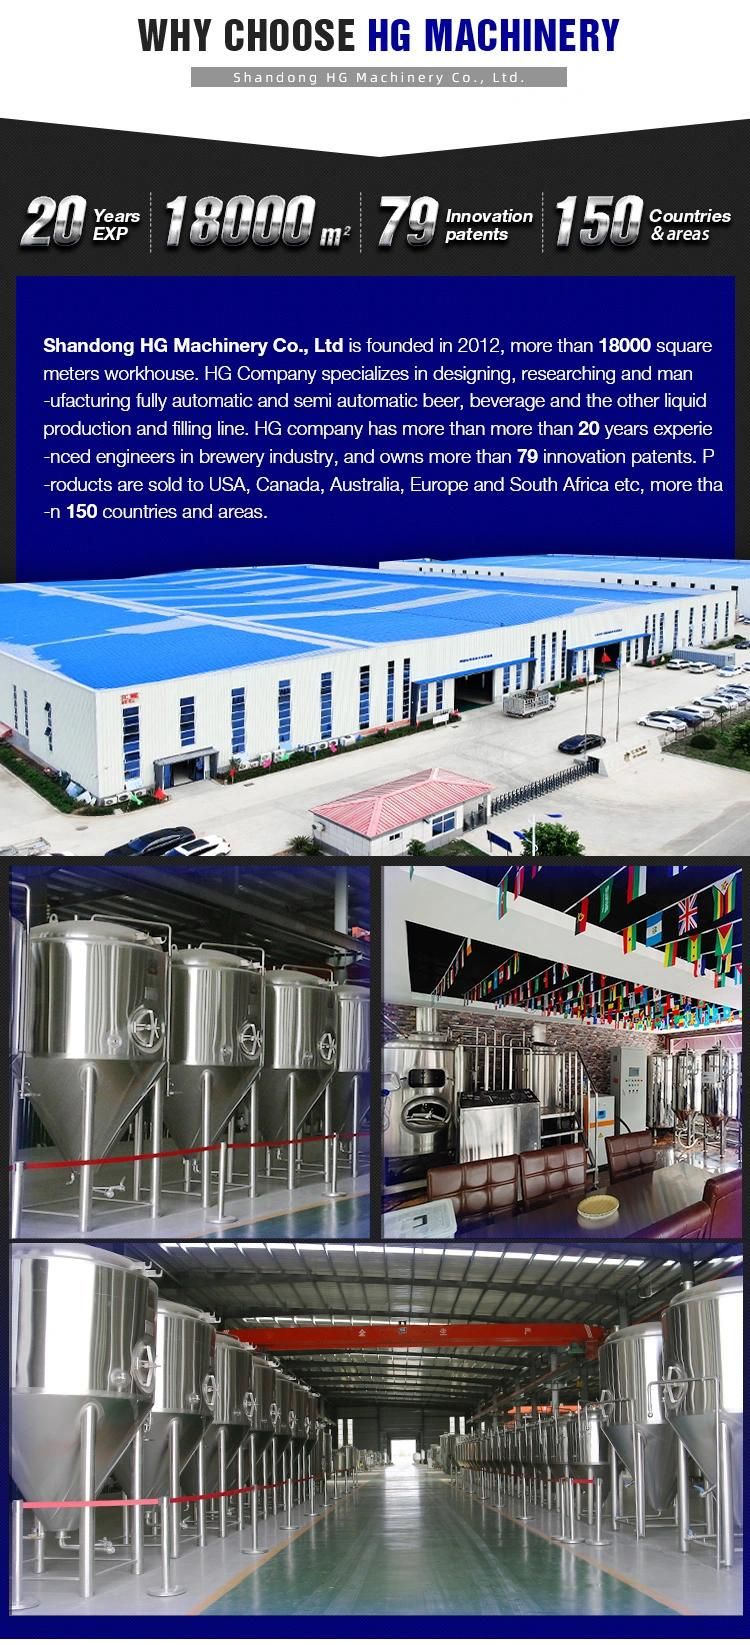 Industrial Beer Brewery Equipment / Large Beer Brewing Equipment / Beer Factory Equipment